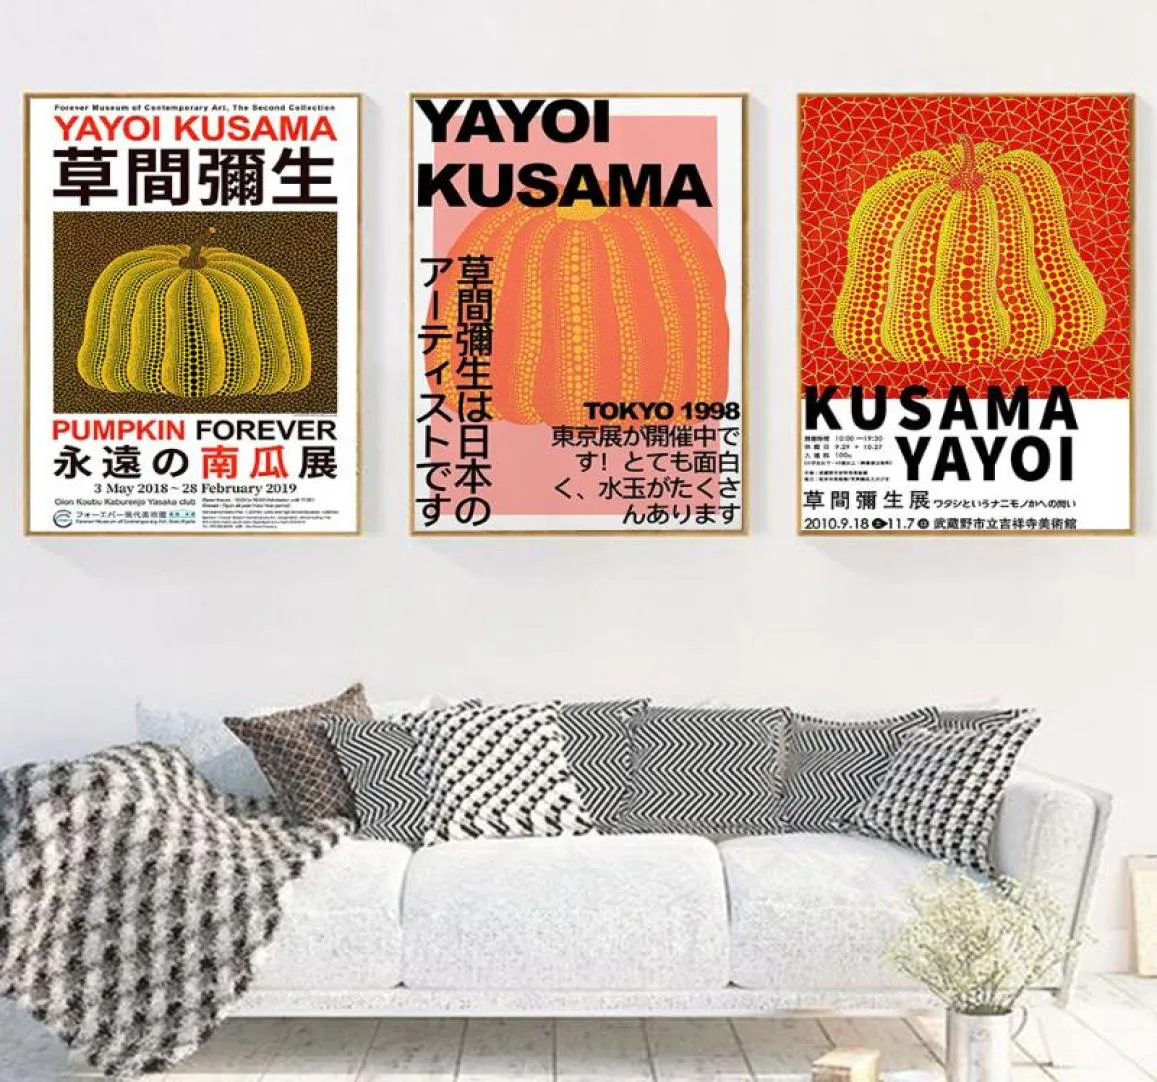 Målningar yayoi kusama konstverk utställnings affischer och tryck pumpa väggkonst bilder museum canvas målning för vardagsrum hem7017390